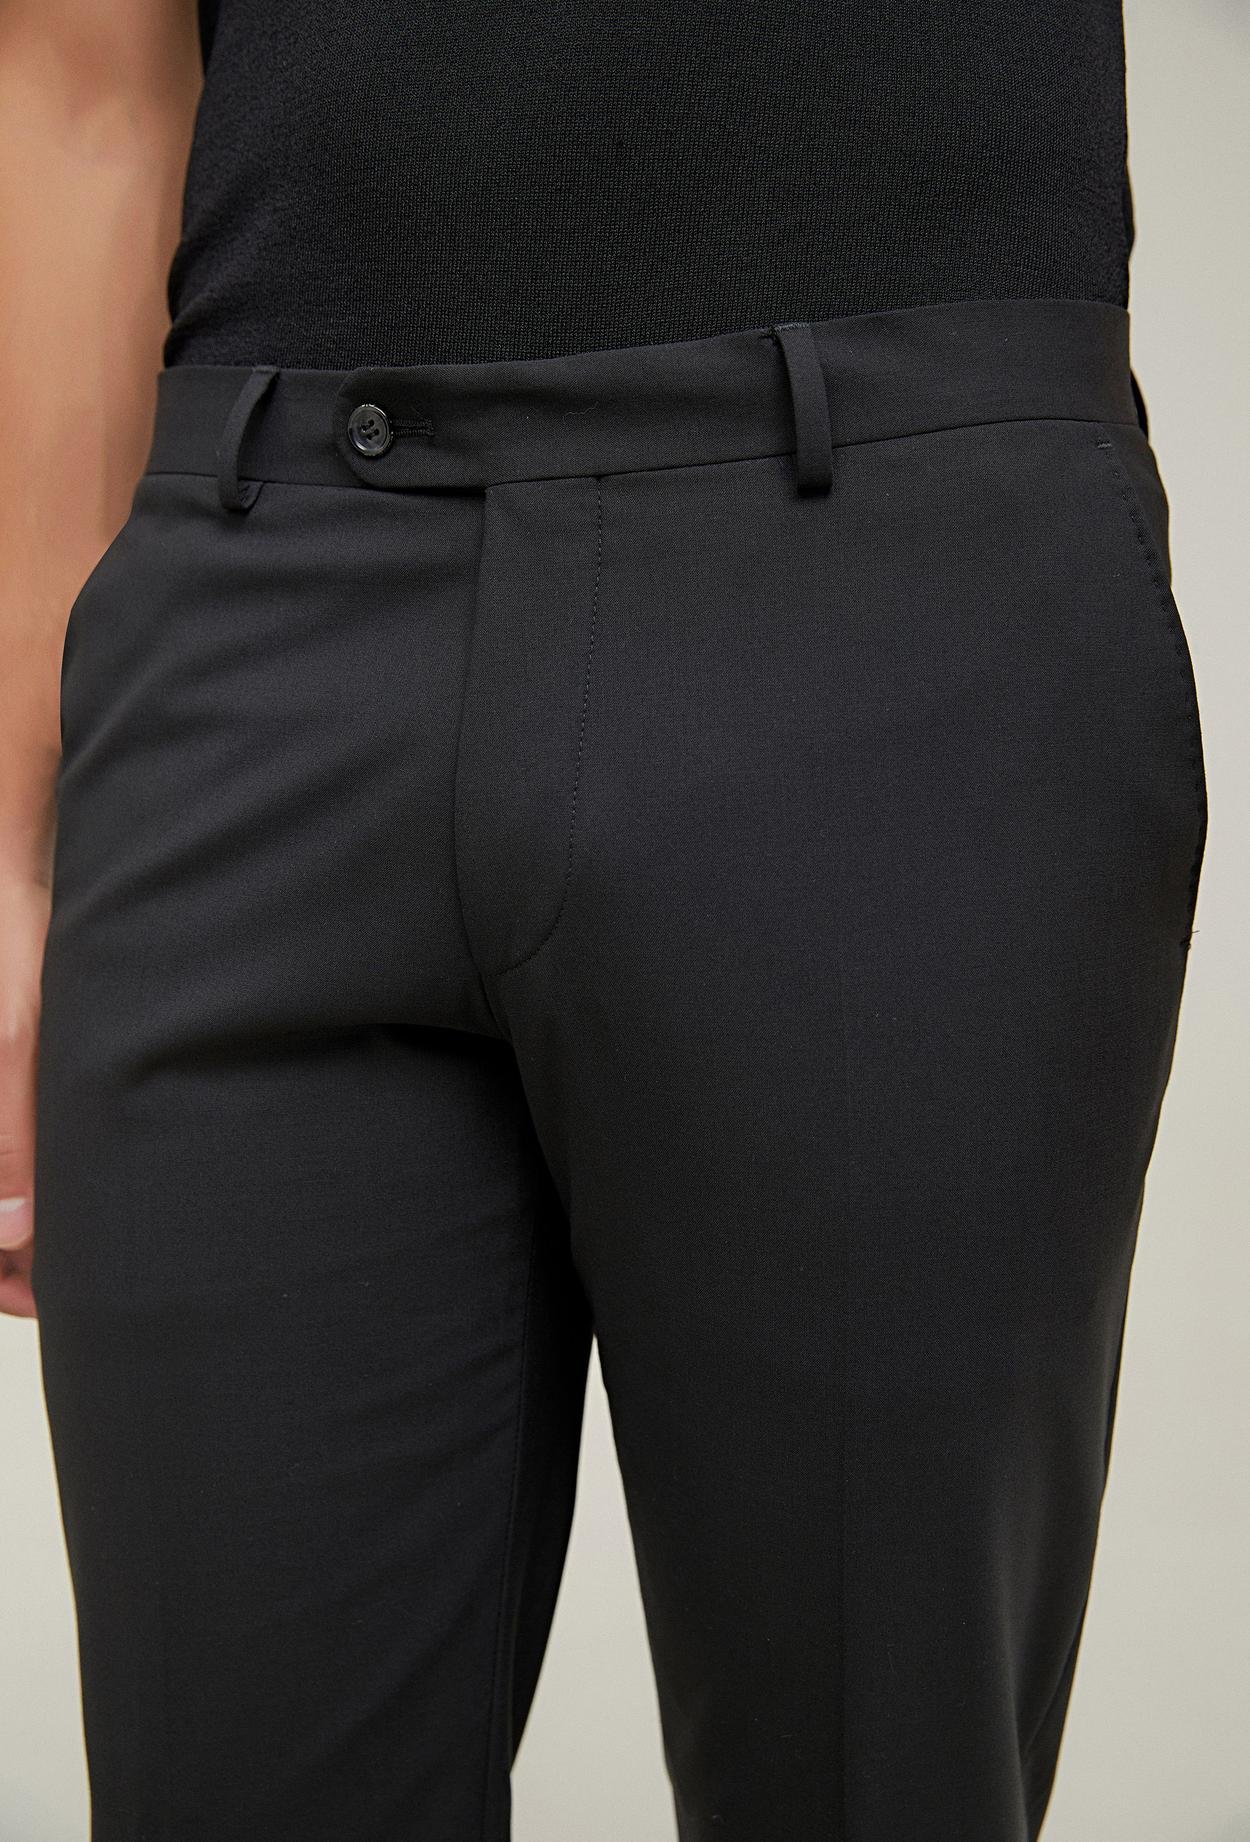 Ds Damat Comfort Siyah Düz Kumaş Pantolon